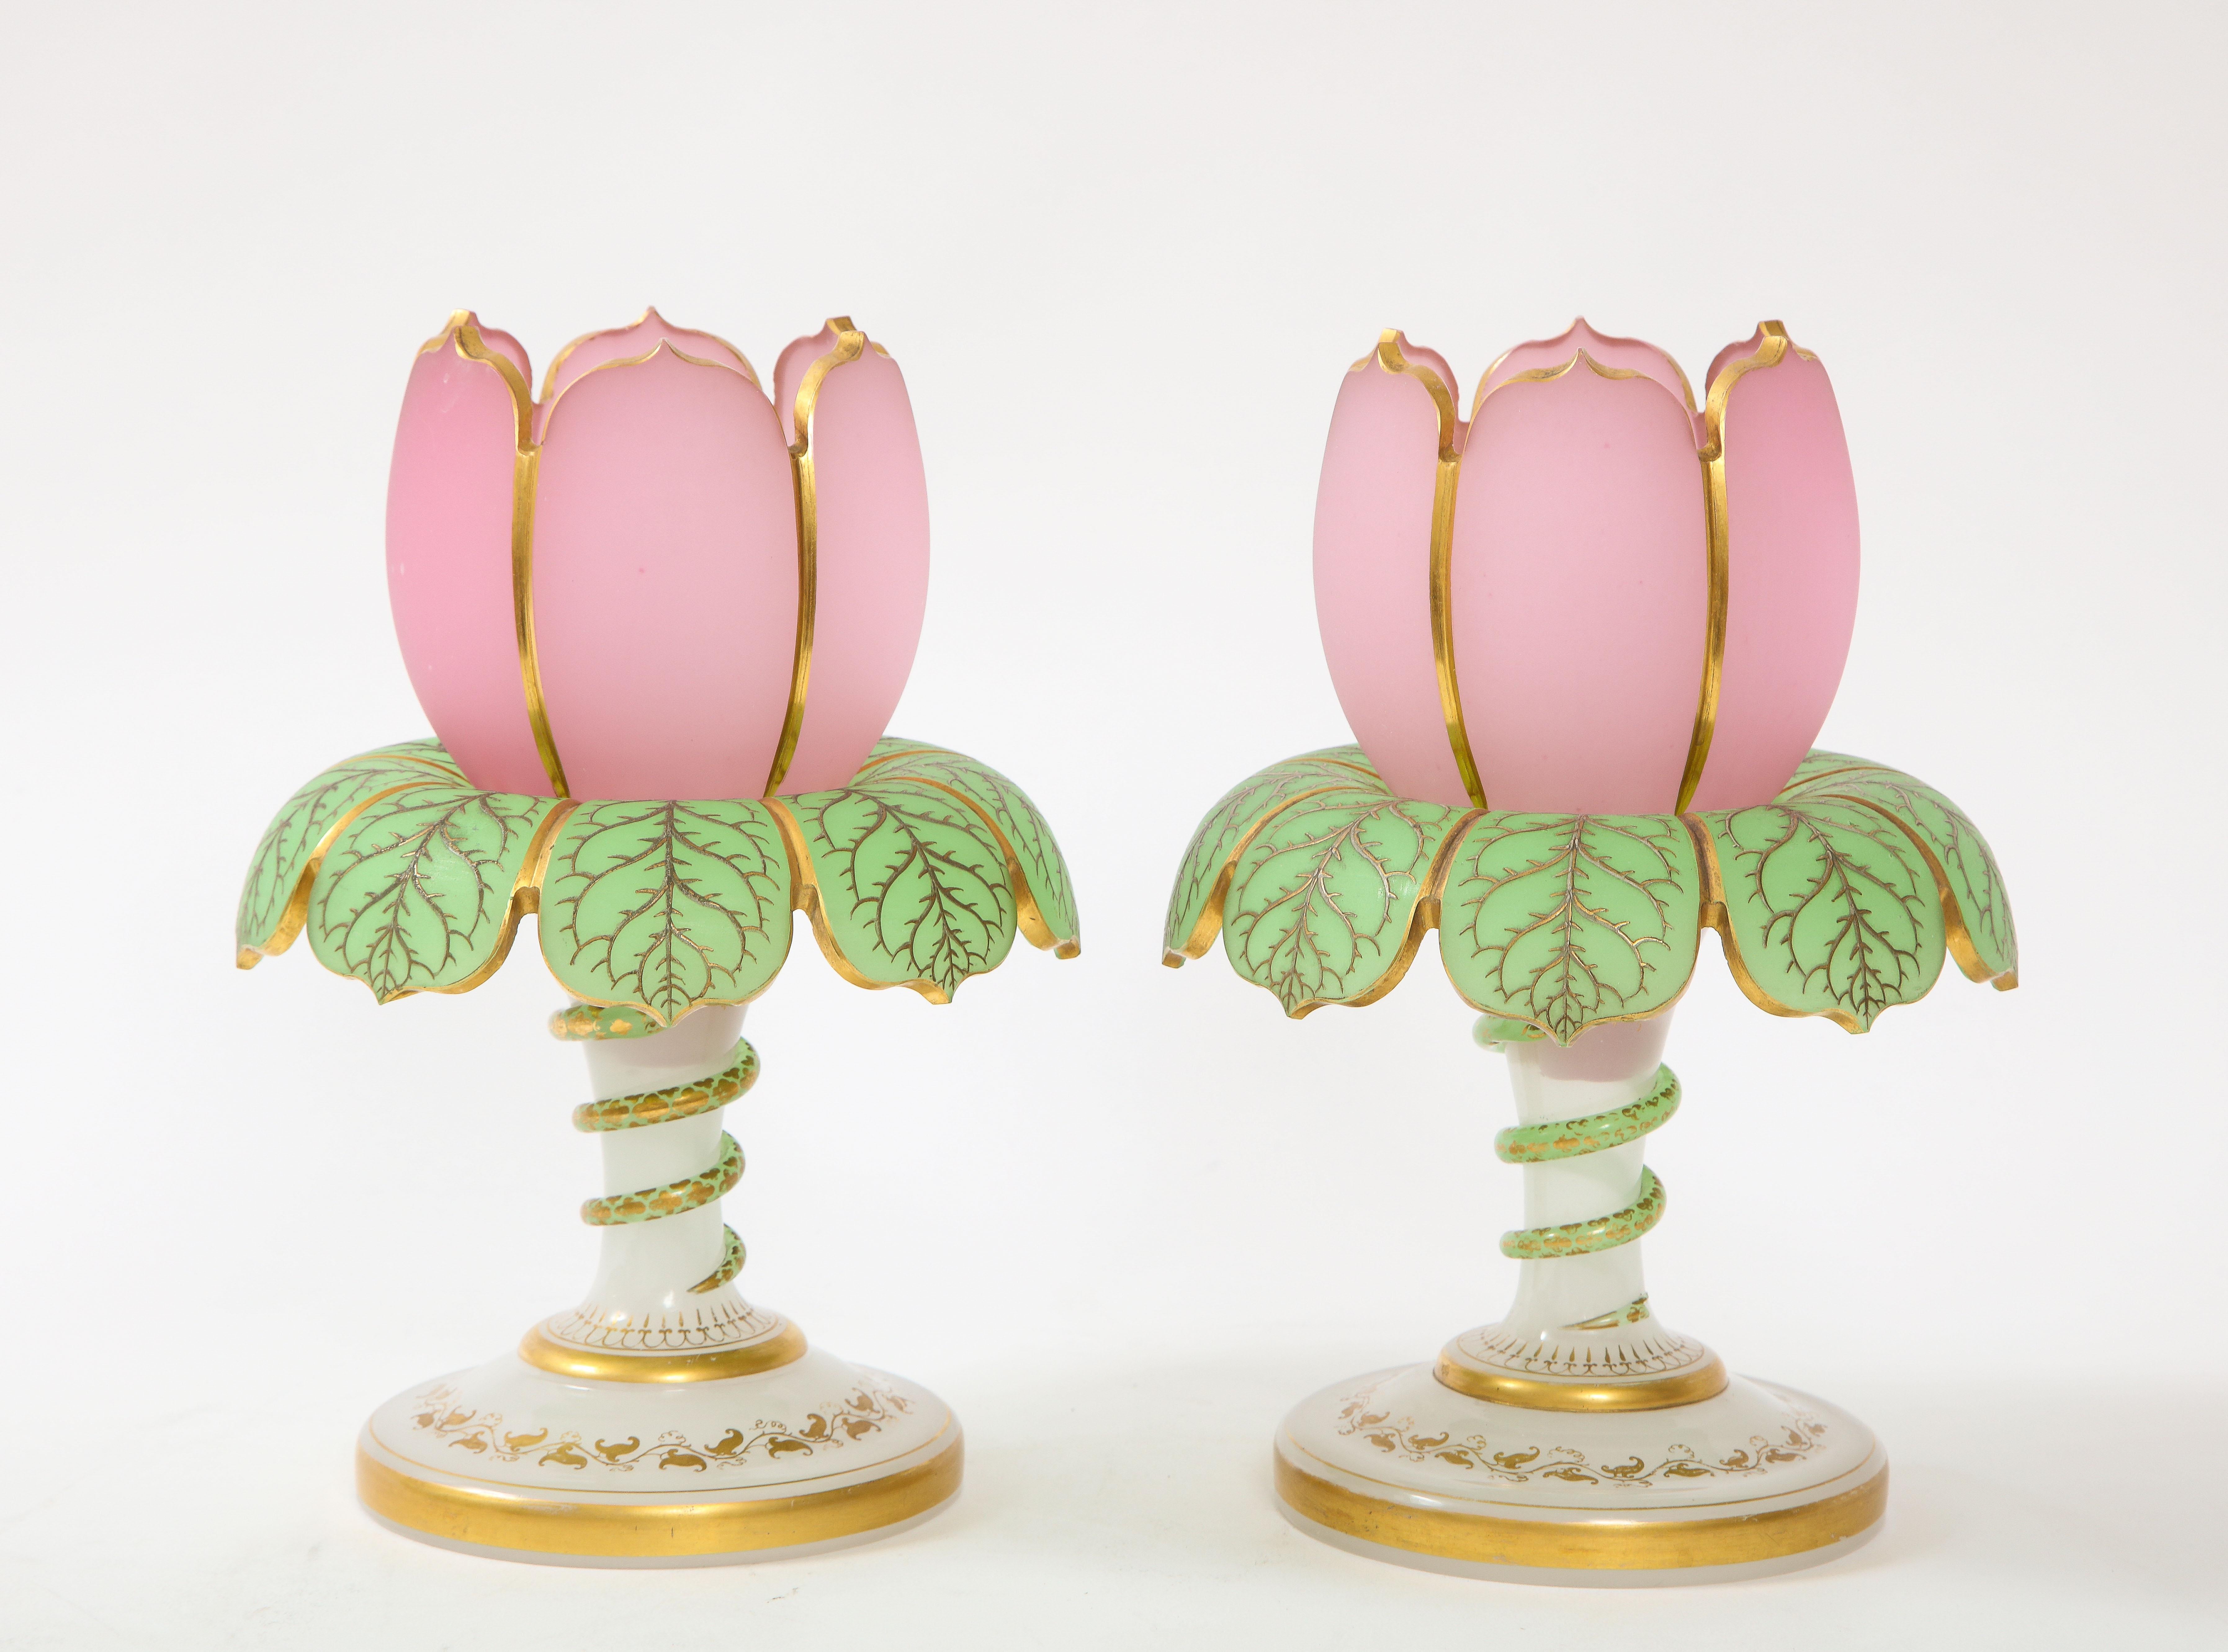 Une fabuleuse et assez rare paire de vases/ bougeoirs en opaline 3 couleurs de forme tulipe de Baccarat du 19ème siècle avec un décor de serpent. Le haut de chacun des vases est en cristal Baccarat opalin rose et la finition est en or brossé 24K.